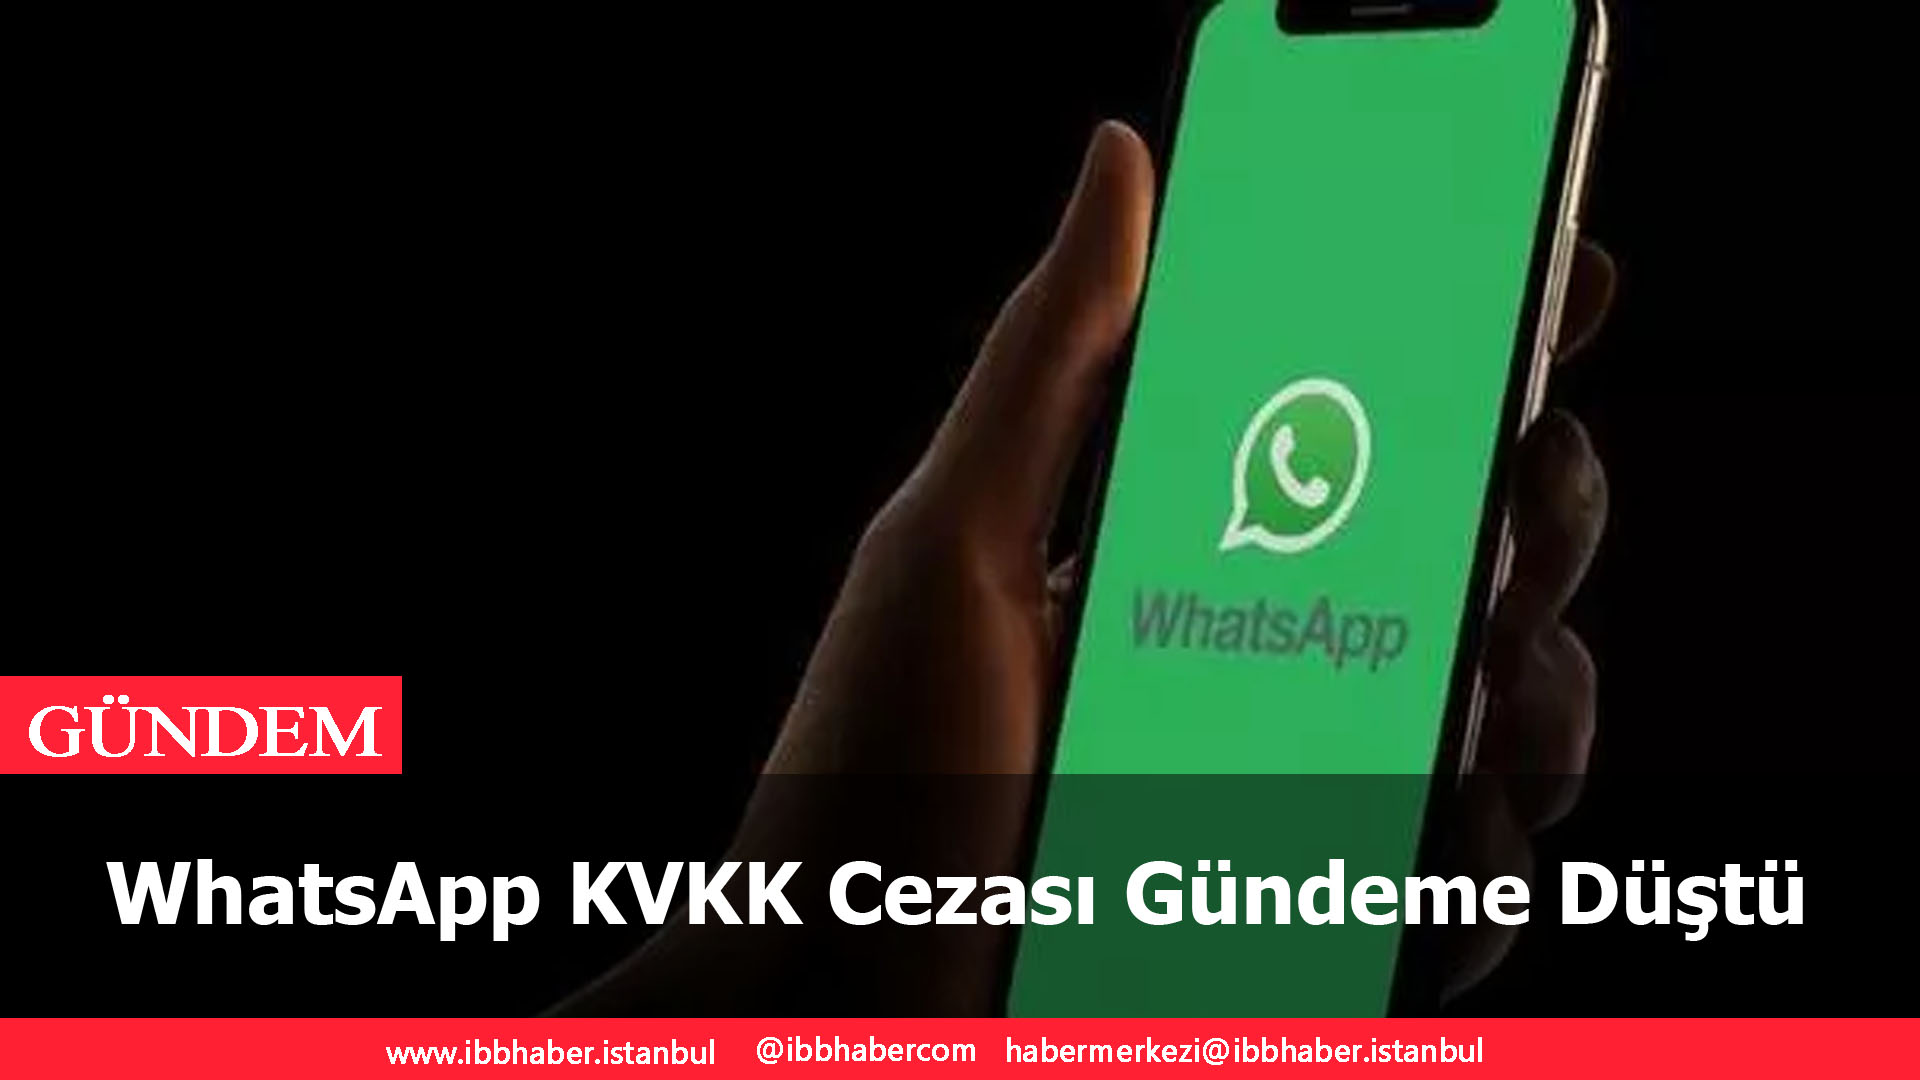 WhatsApp KVKK Cezası Gündeme Düştü